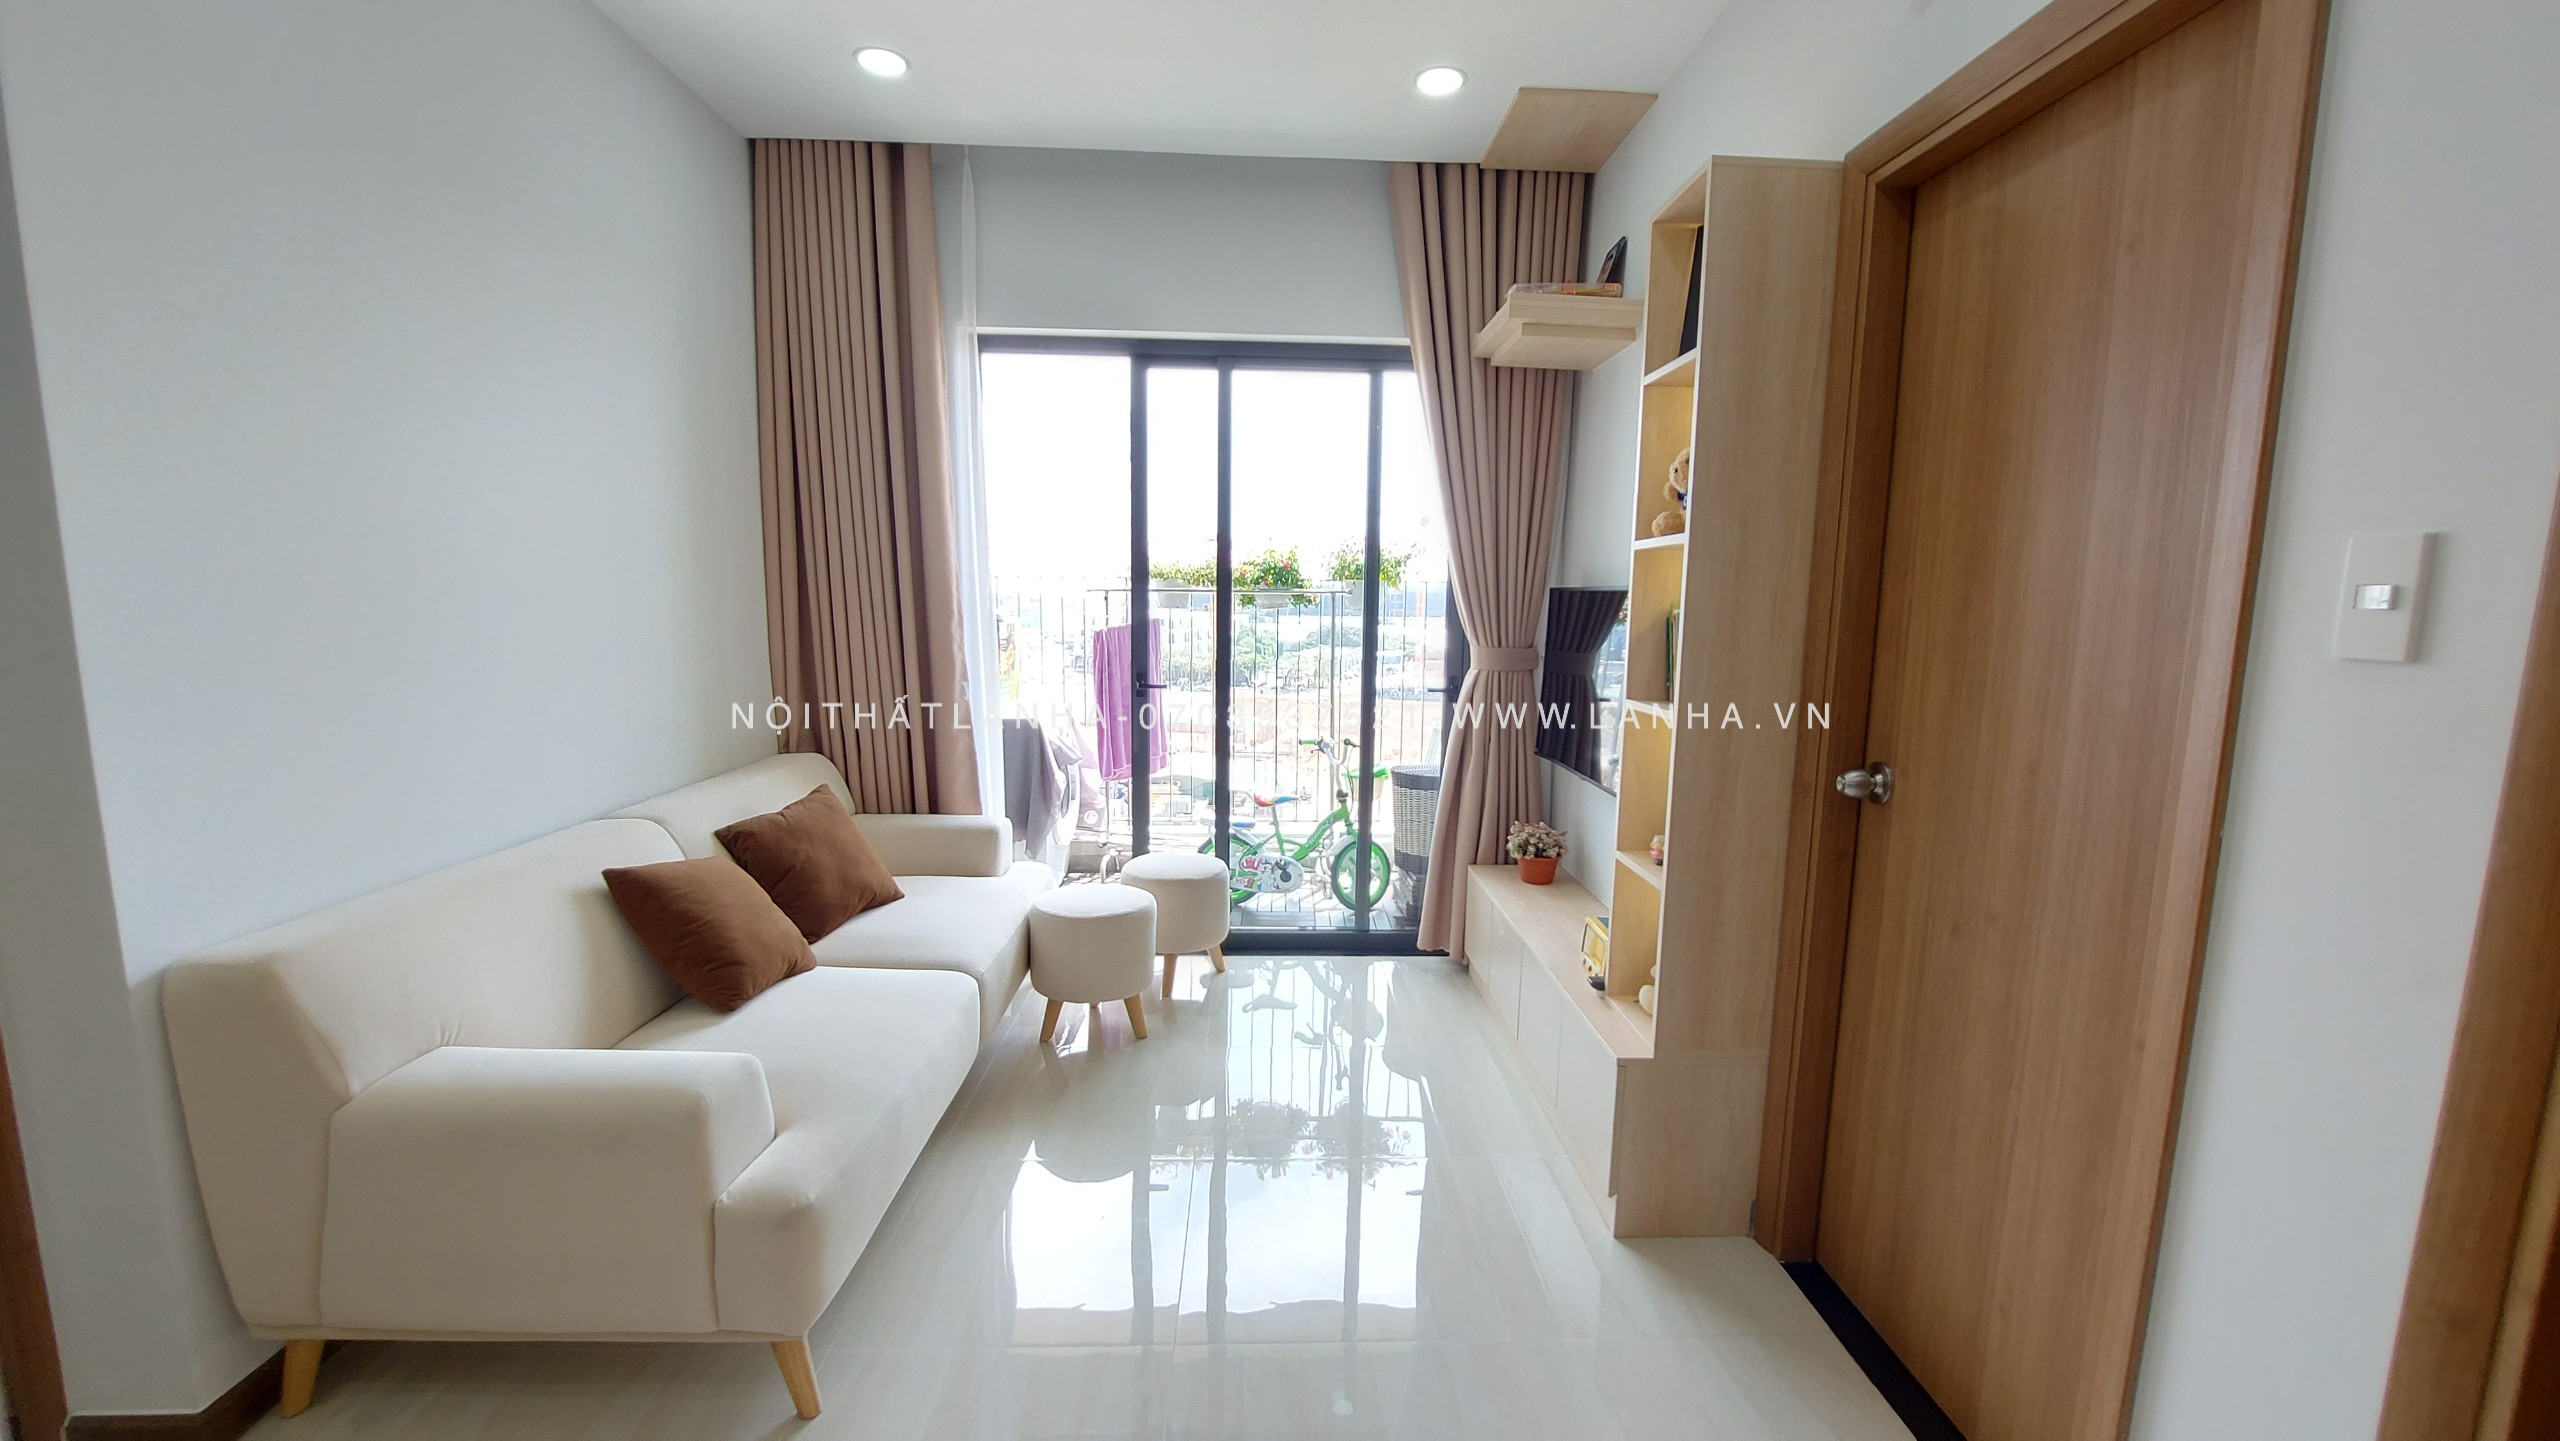 Thiết kế nội thất chung cư 2 phòng ngủ phong cách tối giản với tông trắng chủ đạo